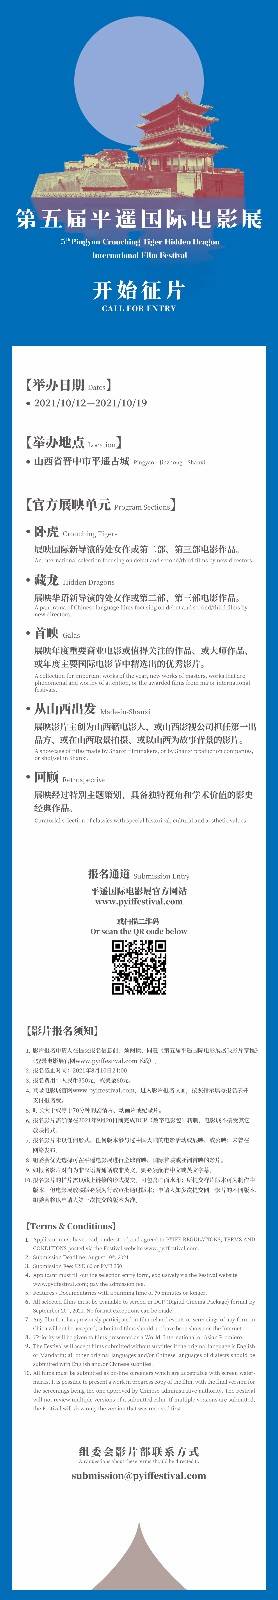 贾樟柯重返平遥 第5届平遥国际电影展10月12日开幕